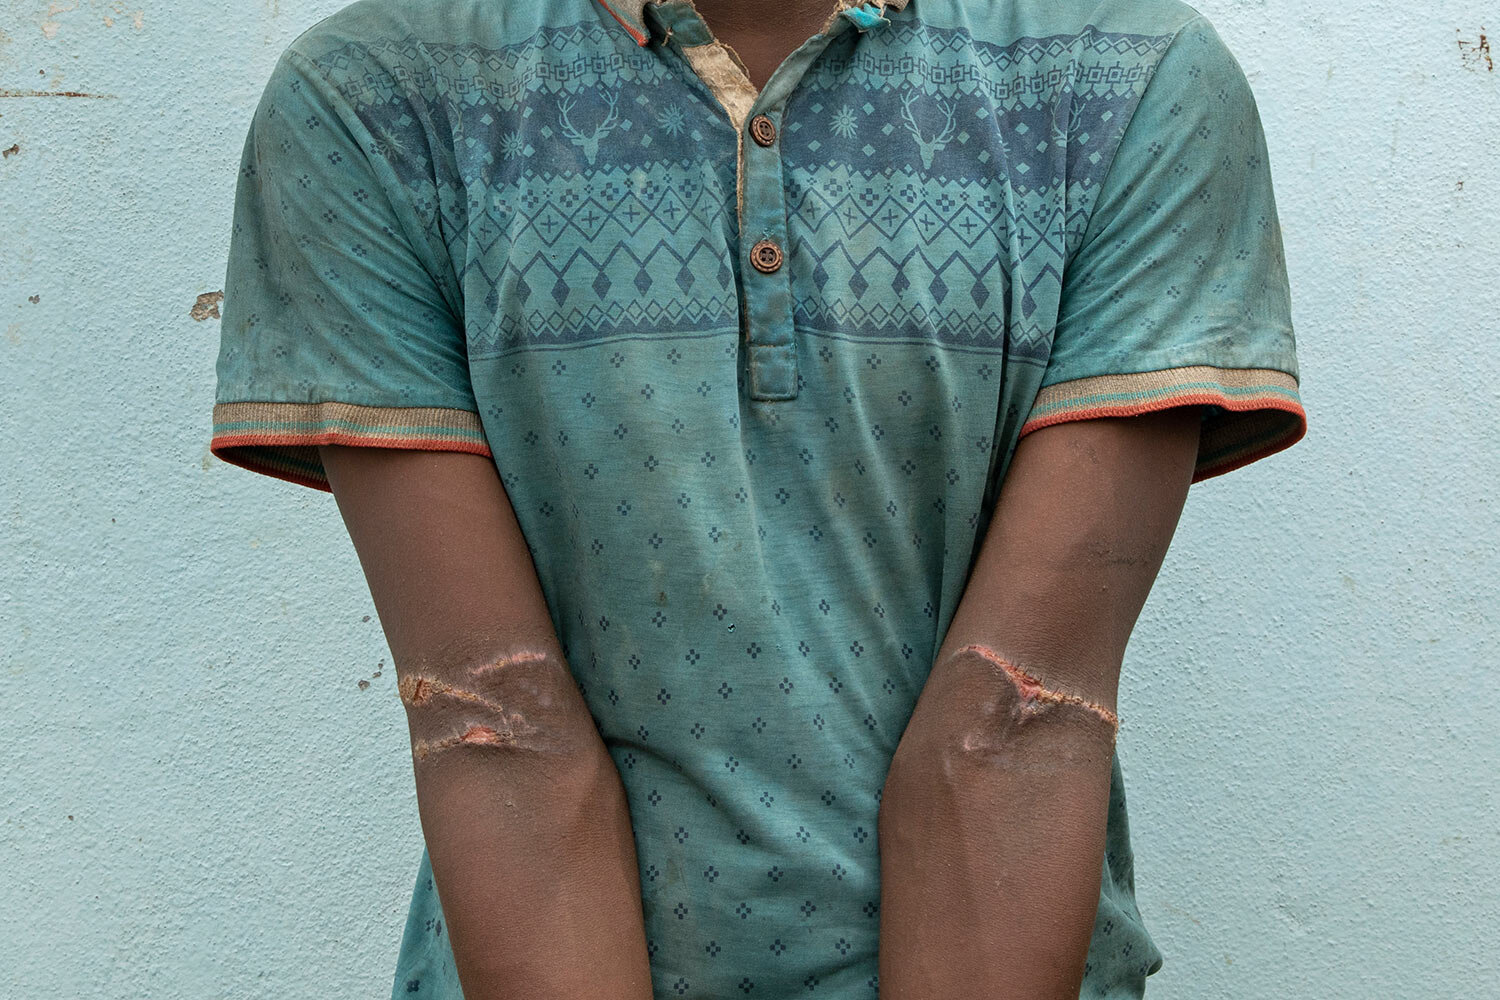 المهاجر من إهوبيان إبراهيم بكالة حسن ، 24 عاماً ، يظهر ندوباً من التعذيب في حوش في لحج ، اليمن.  يقول إن ذراعيه كانت مربوطة خلف ظهره ، ويريد العودة إلى إثيوبيا.  (AP Photo / ناريمان المفتي)